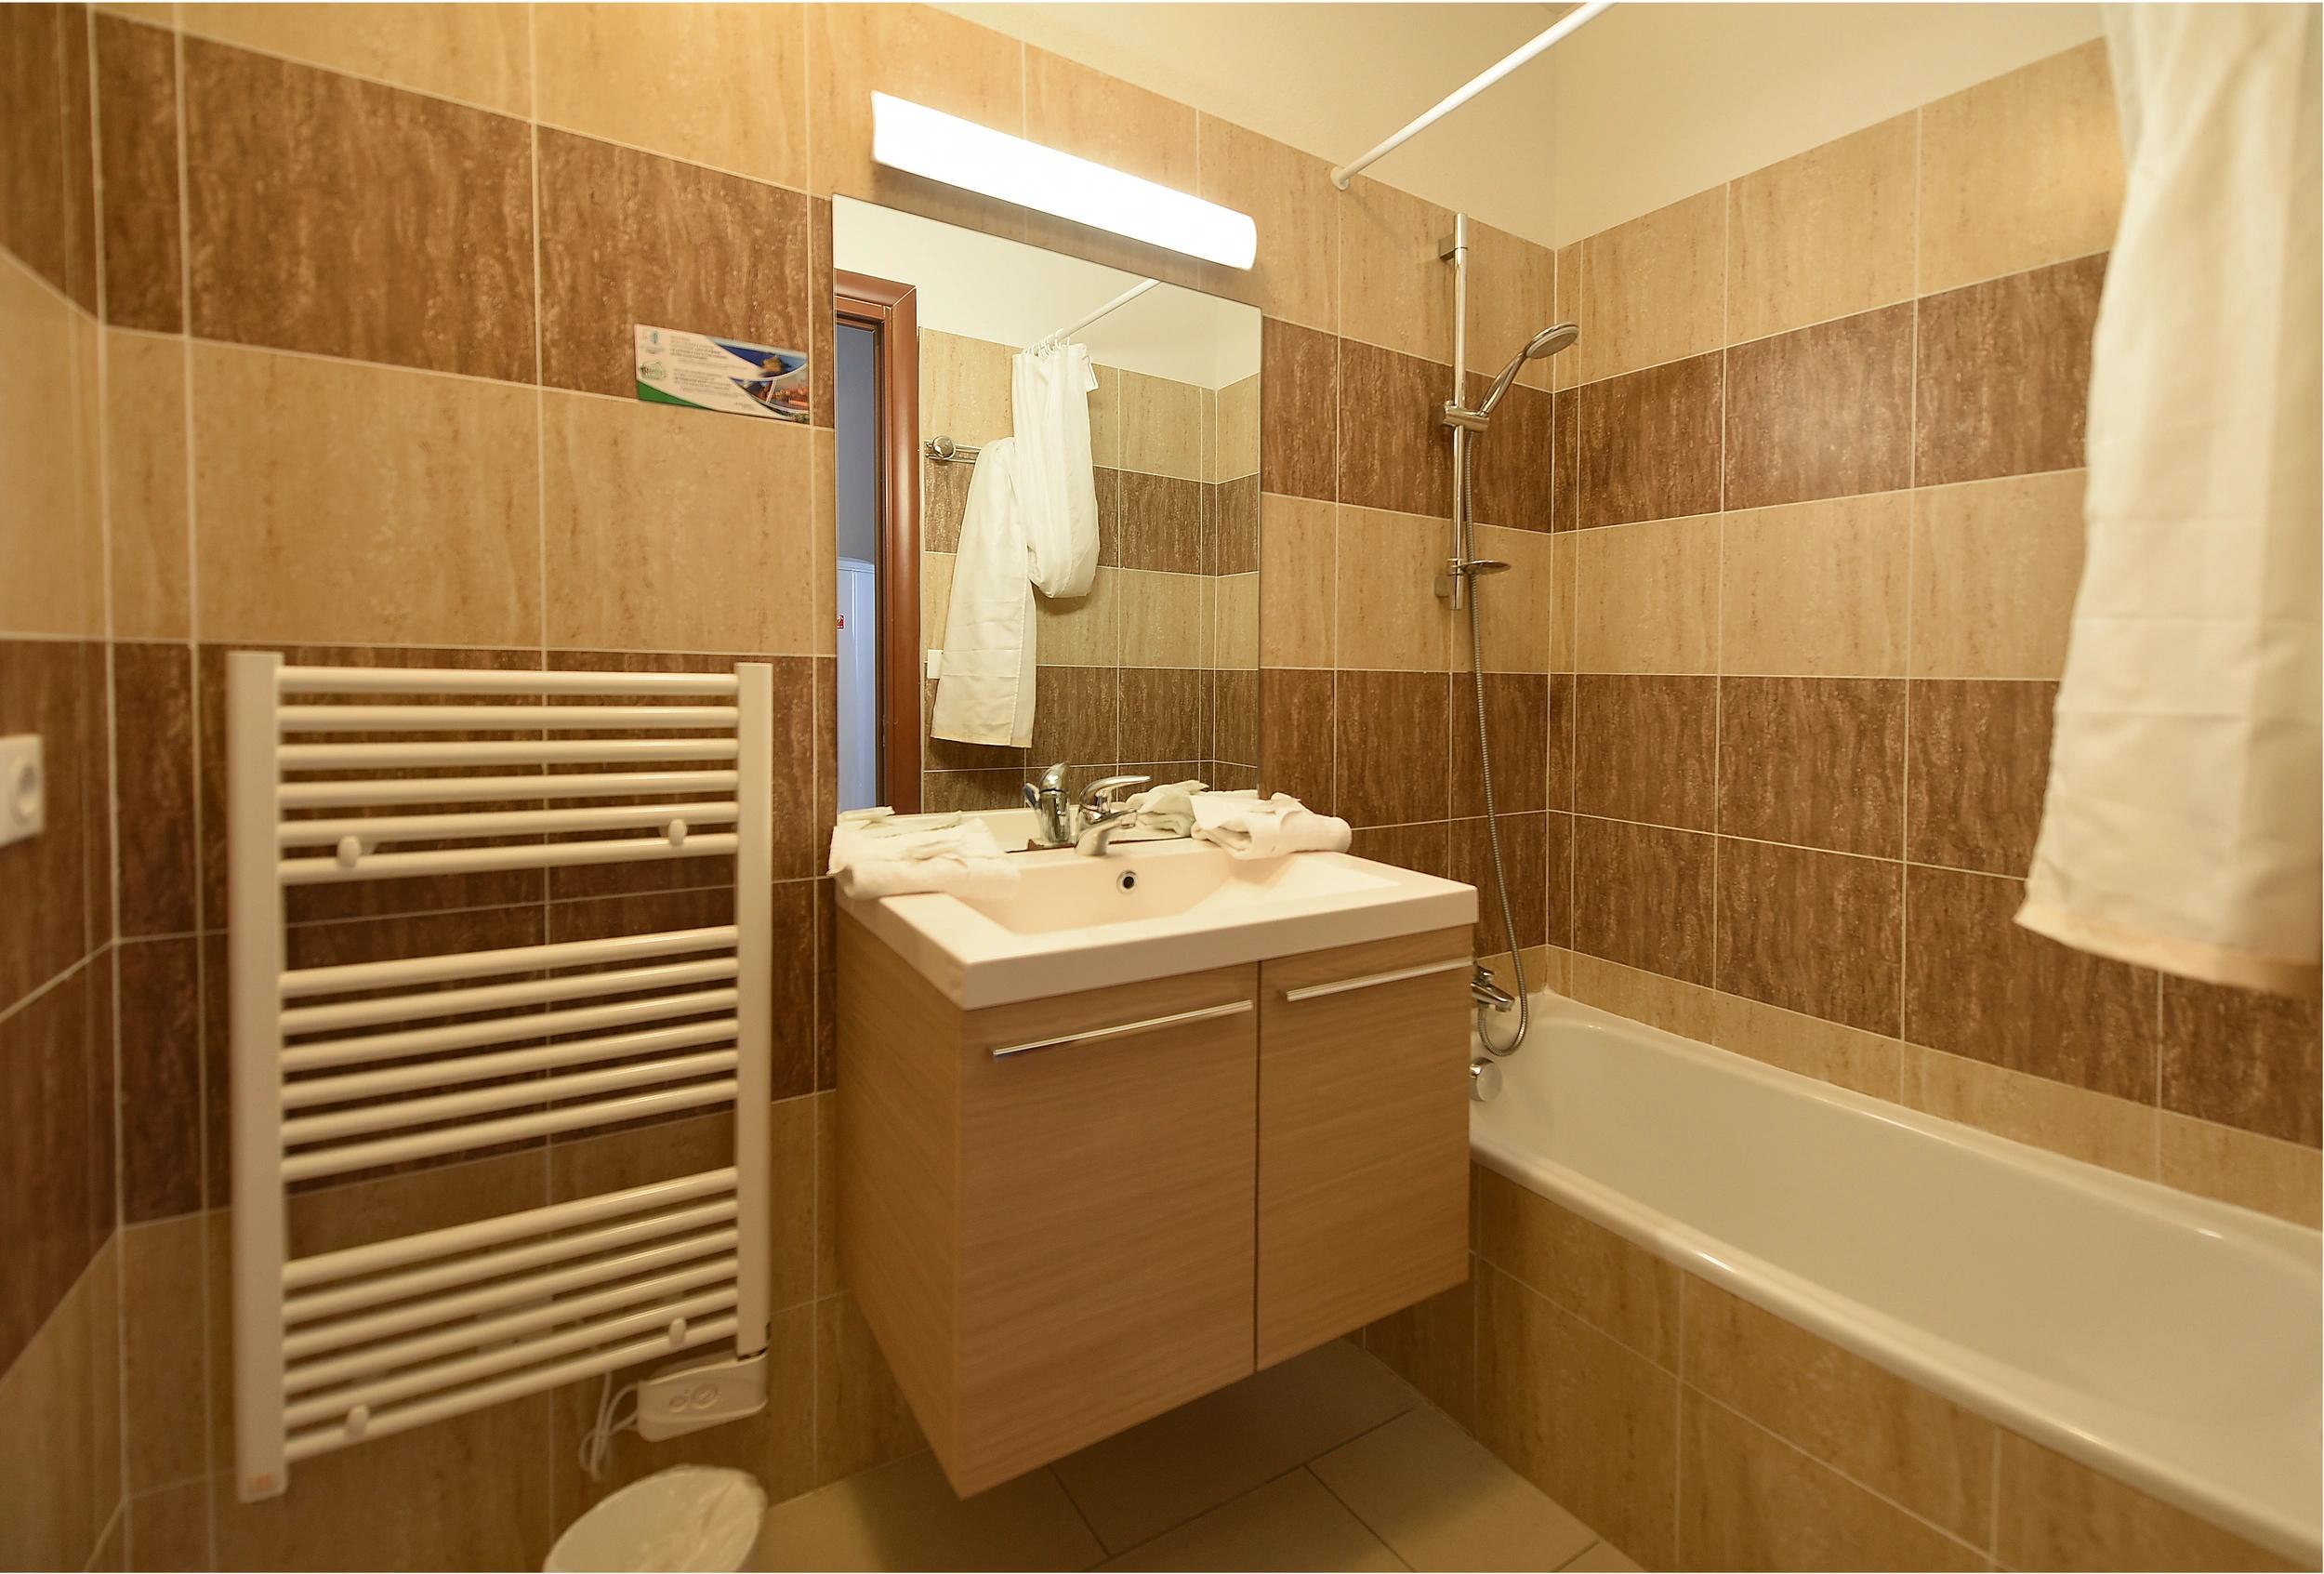 Salle de bain aménagée dans nos grands studios de vacances à la résidence les Calanques à Ajaccio